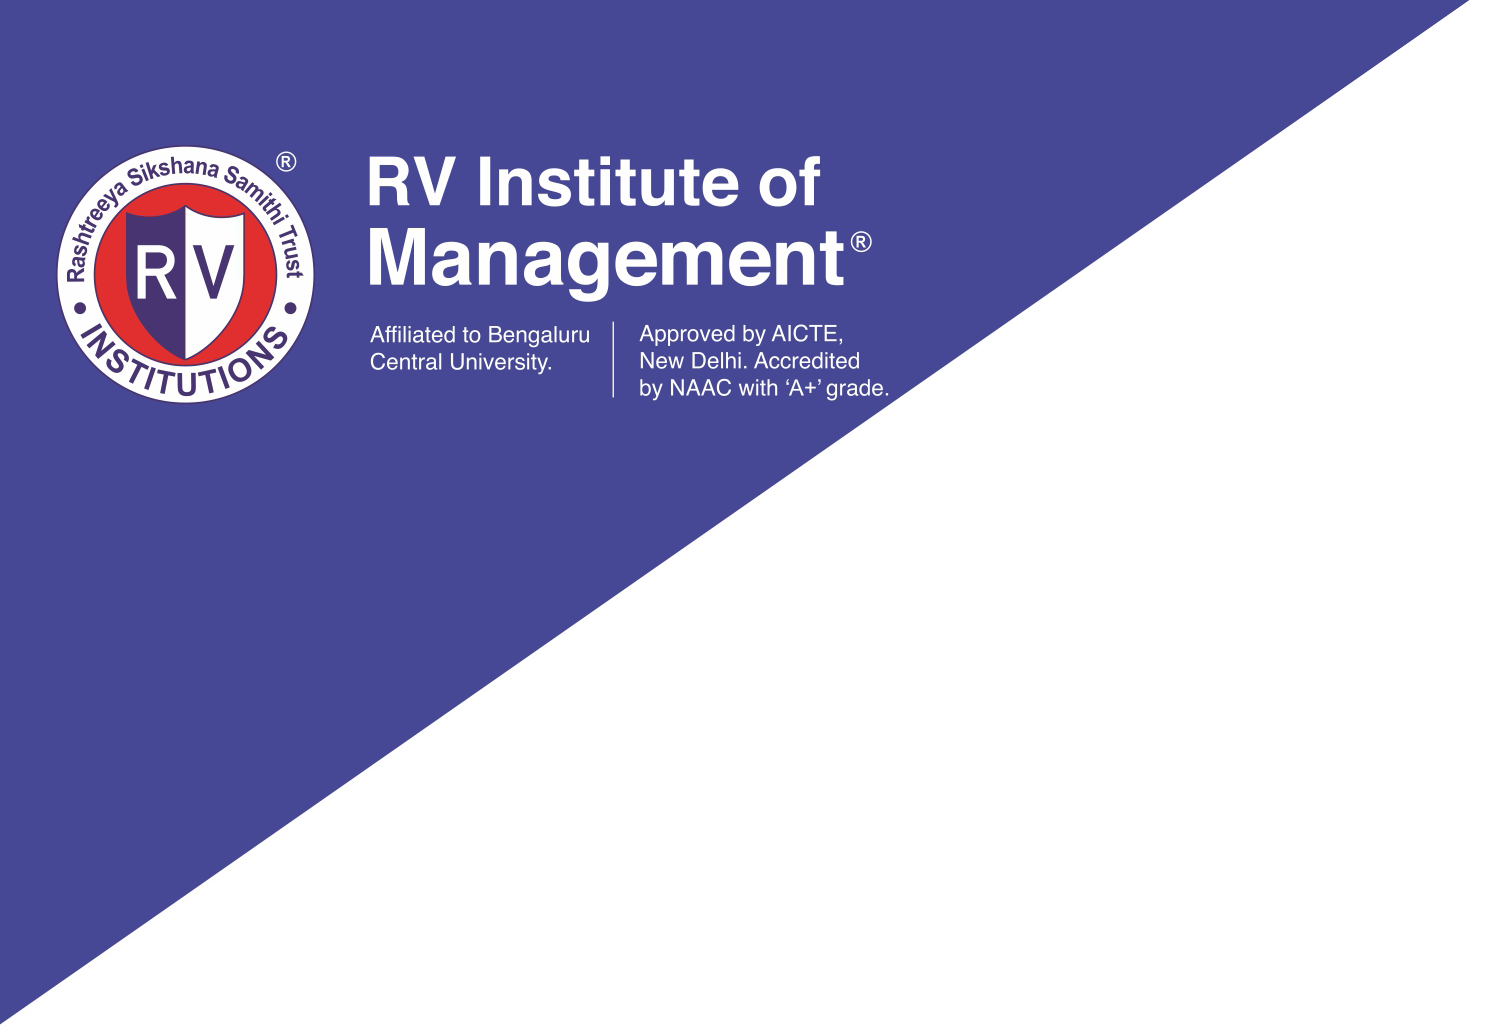 RV INSTITUTE OF MANAGEMENT